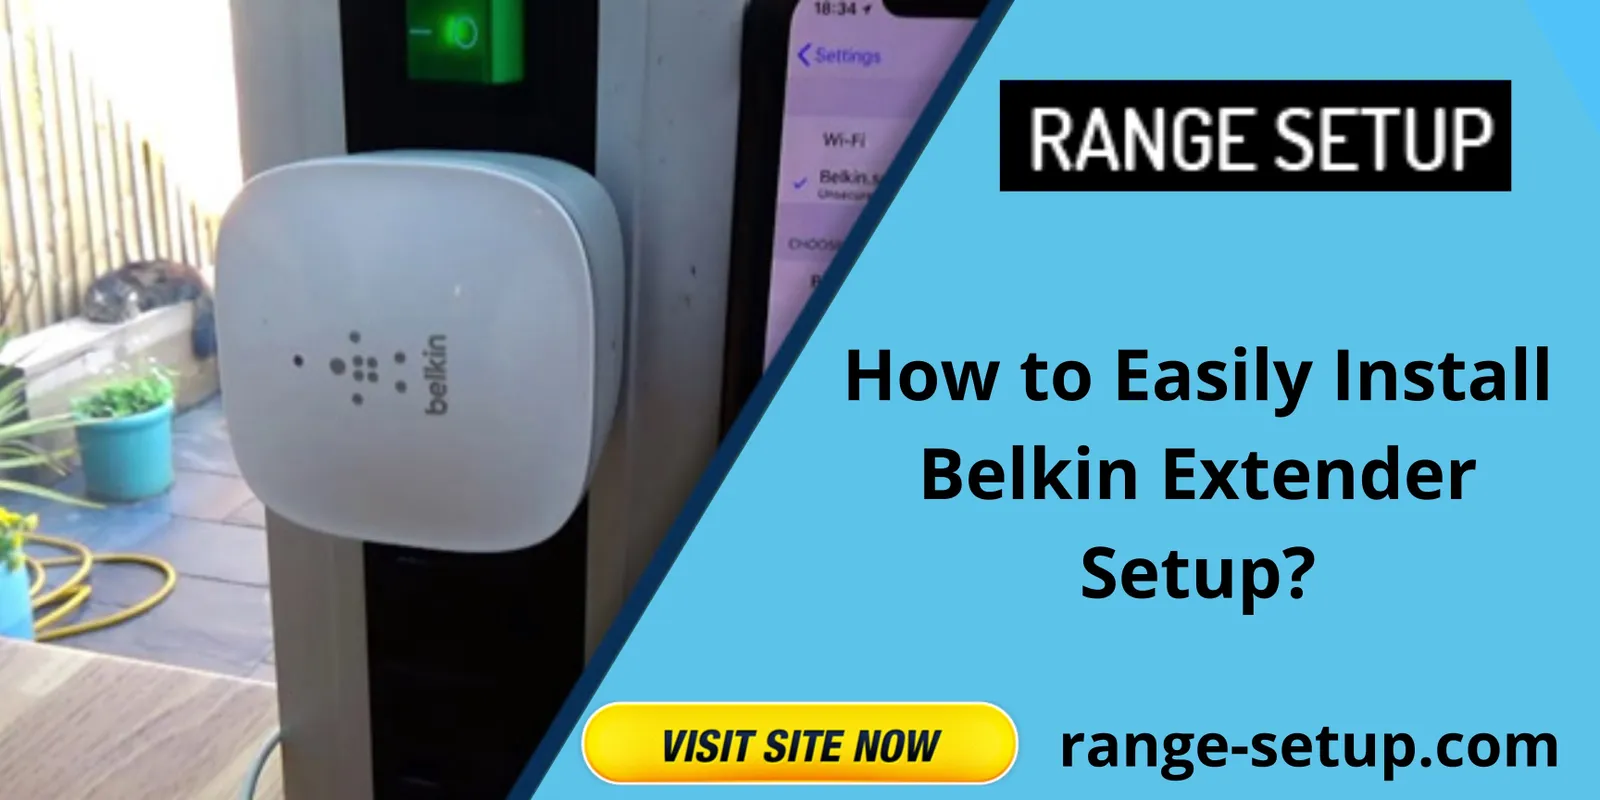 How to Easily Install Belkin Extender Setup?